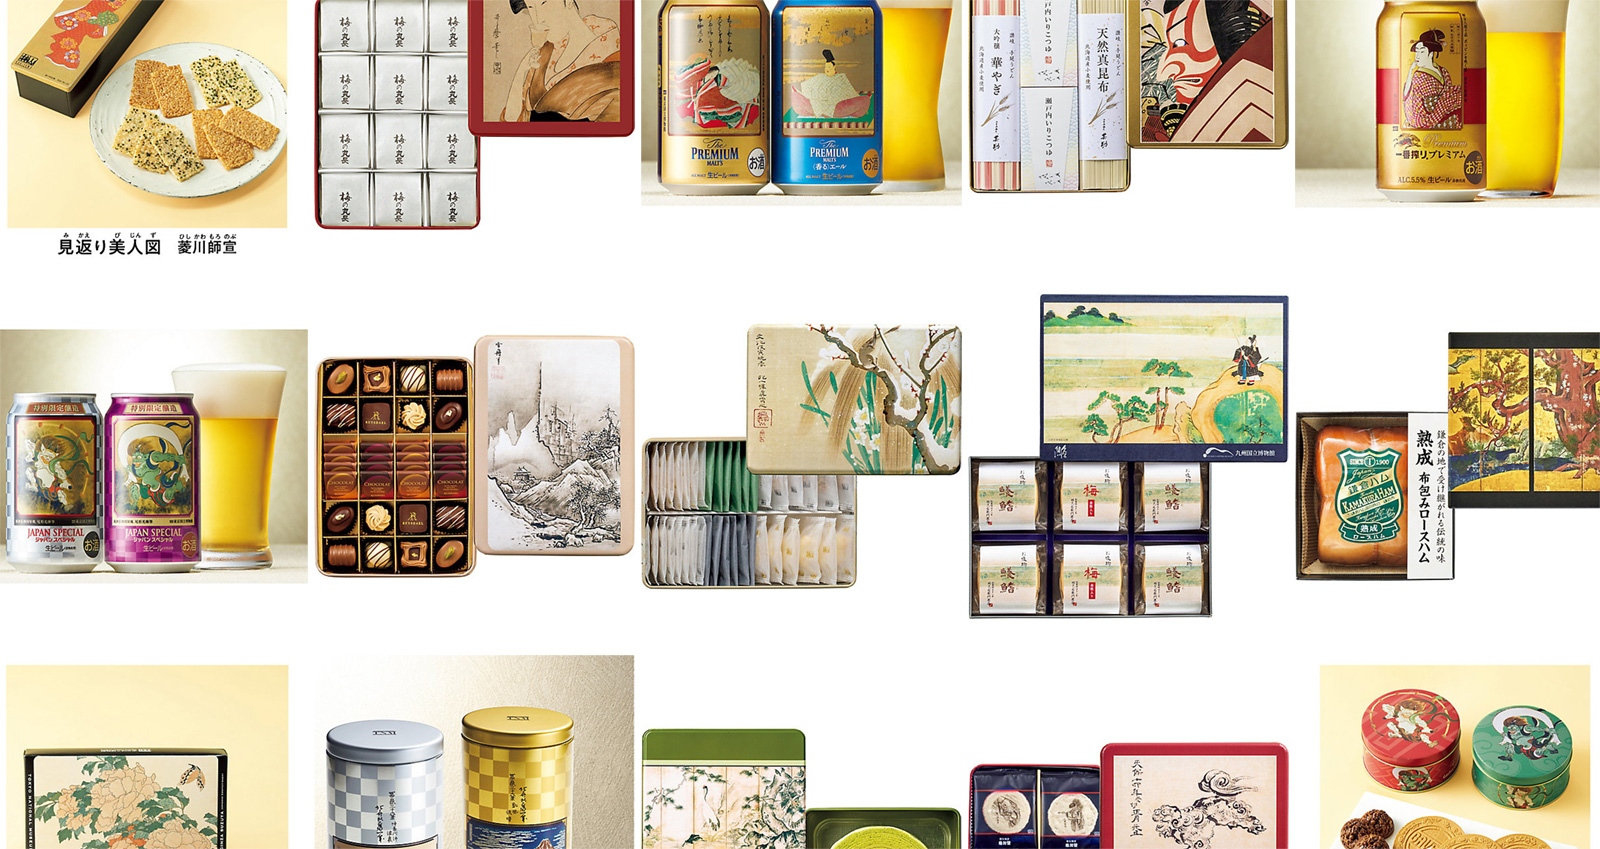 三越伊勢丹と東京国立博物館のコラボによるお歳暮ギフトの缶パッケージが素敵 19年11月27日 エキサイトニュース